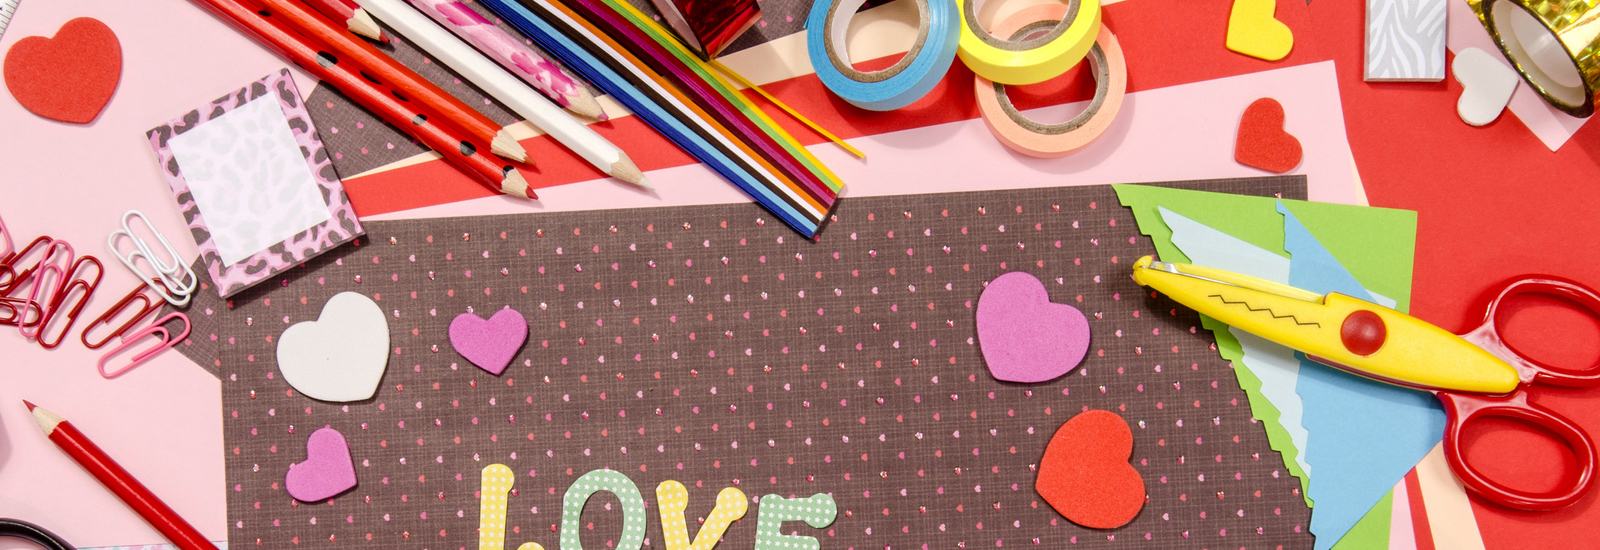 16 + веселых поделок на День Святого Валентина для детей